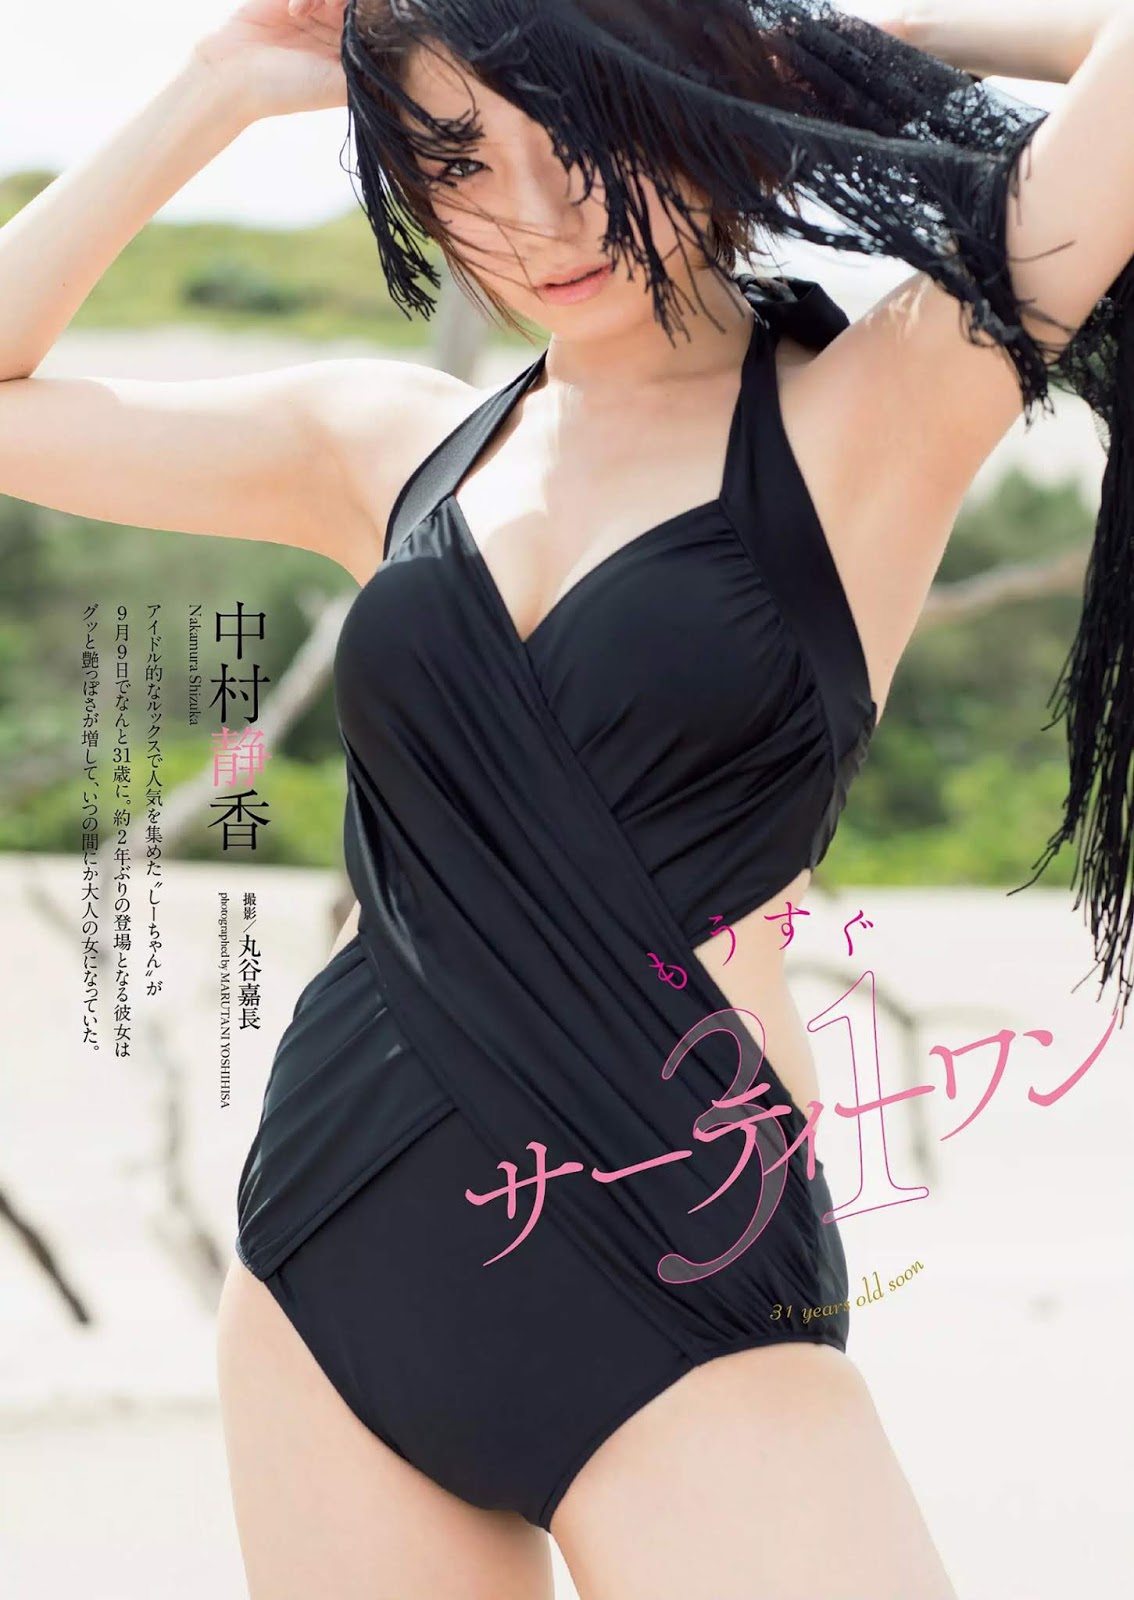 中村靜香, Weekly Playboy 2019 No.33 (週刊プレイボーイ 2019年33號) - 亞洲美女 -